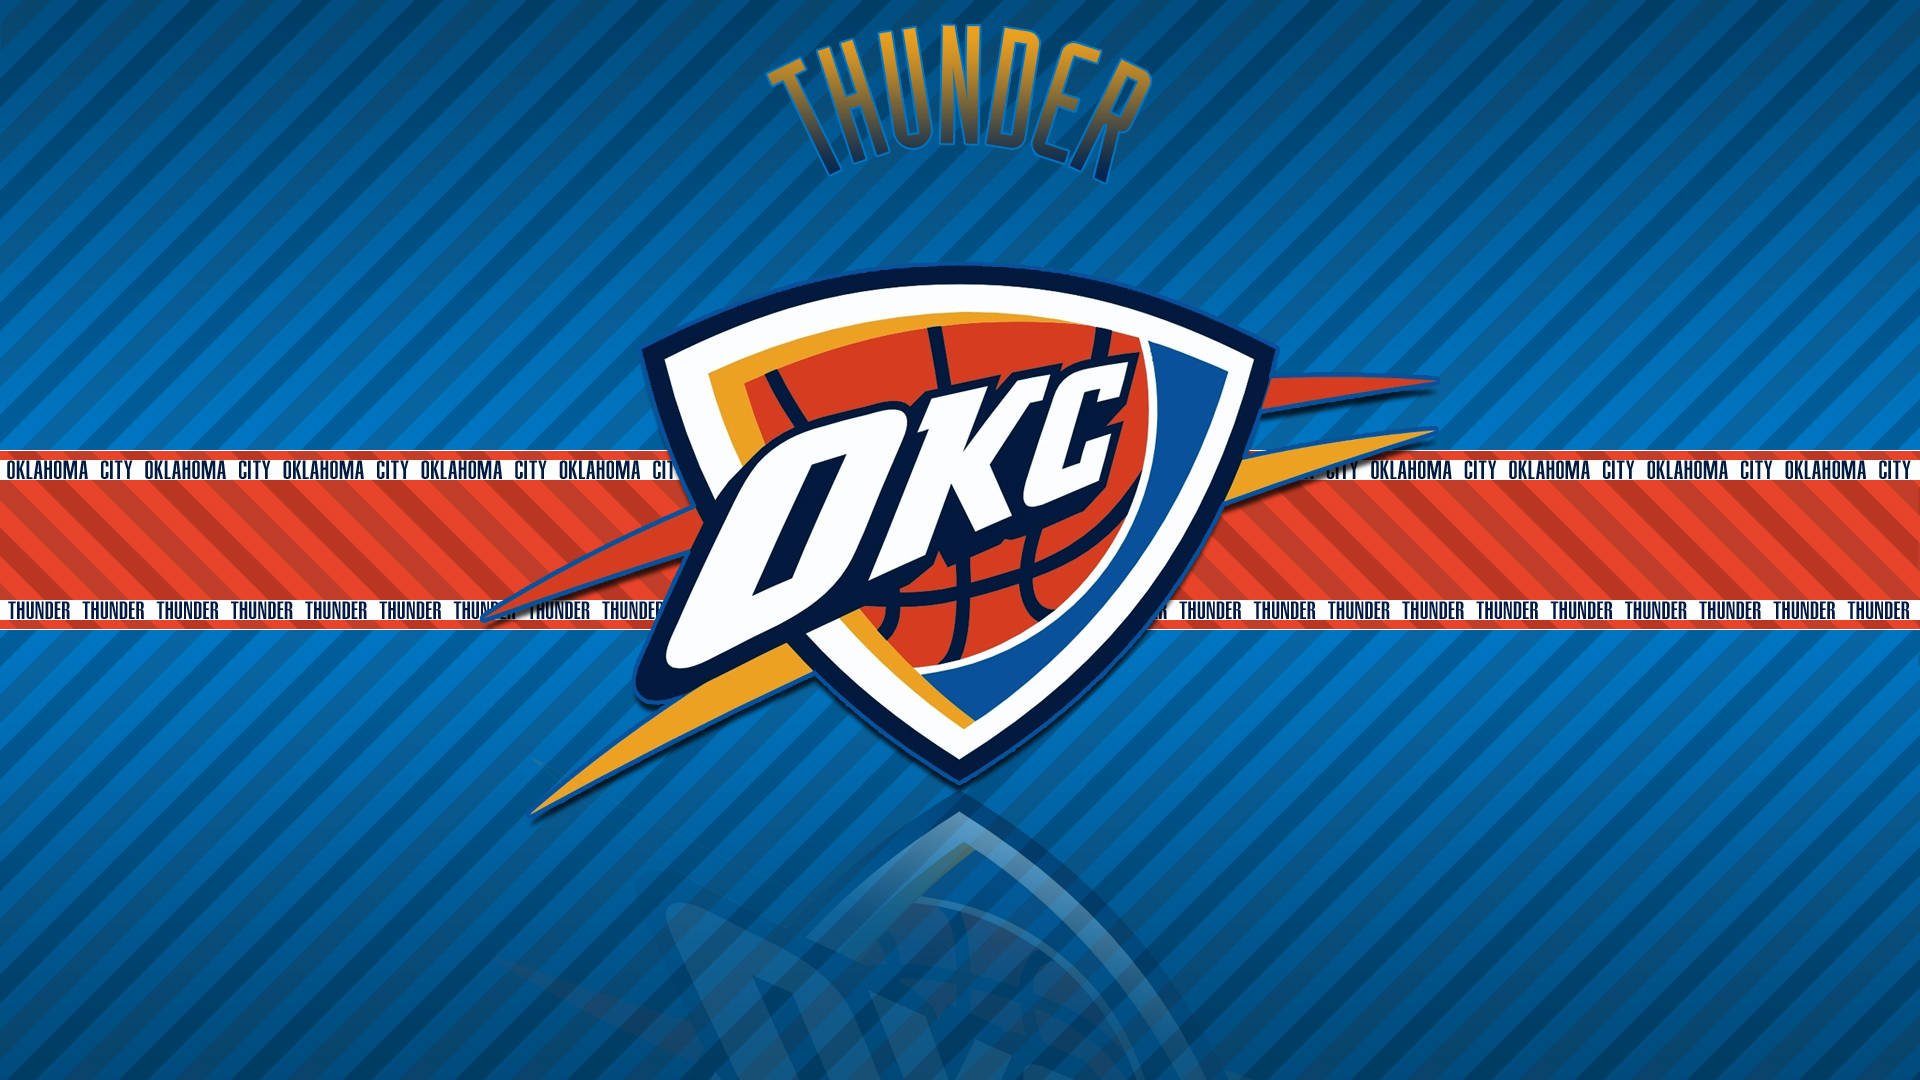 Fundovermelho E Azul Do Oklahoma City Thunder. Papel de Parede